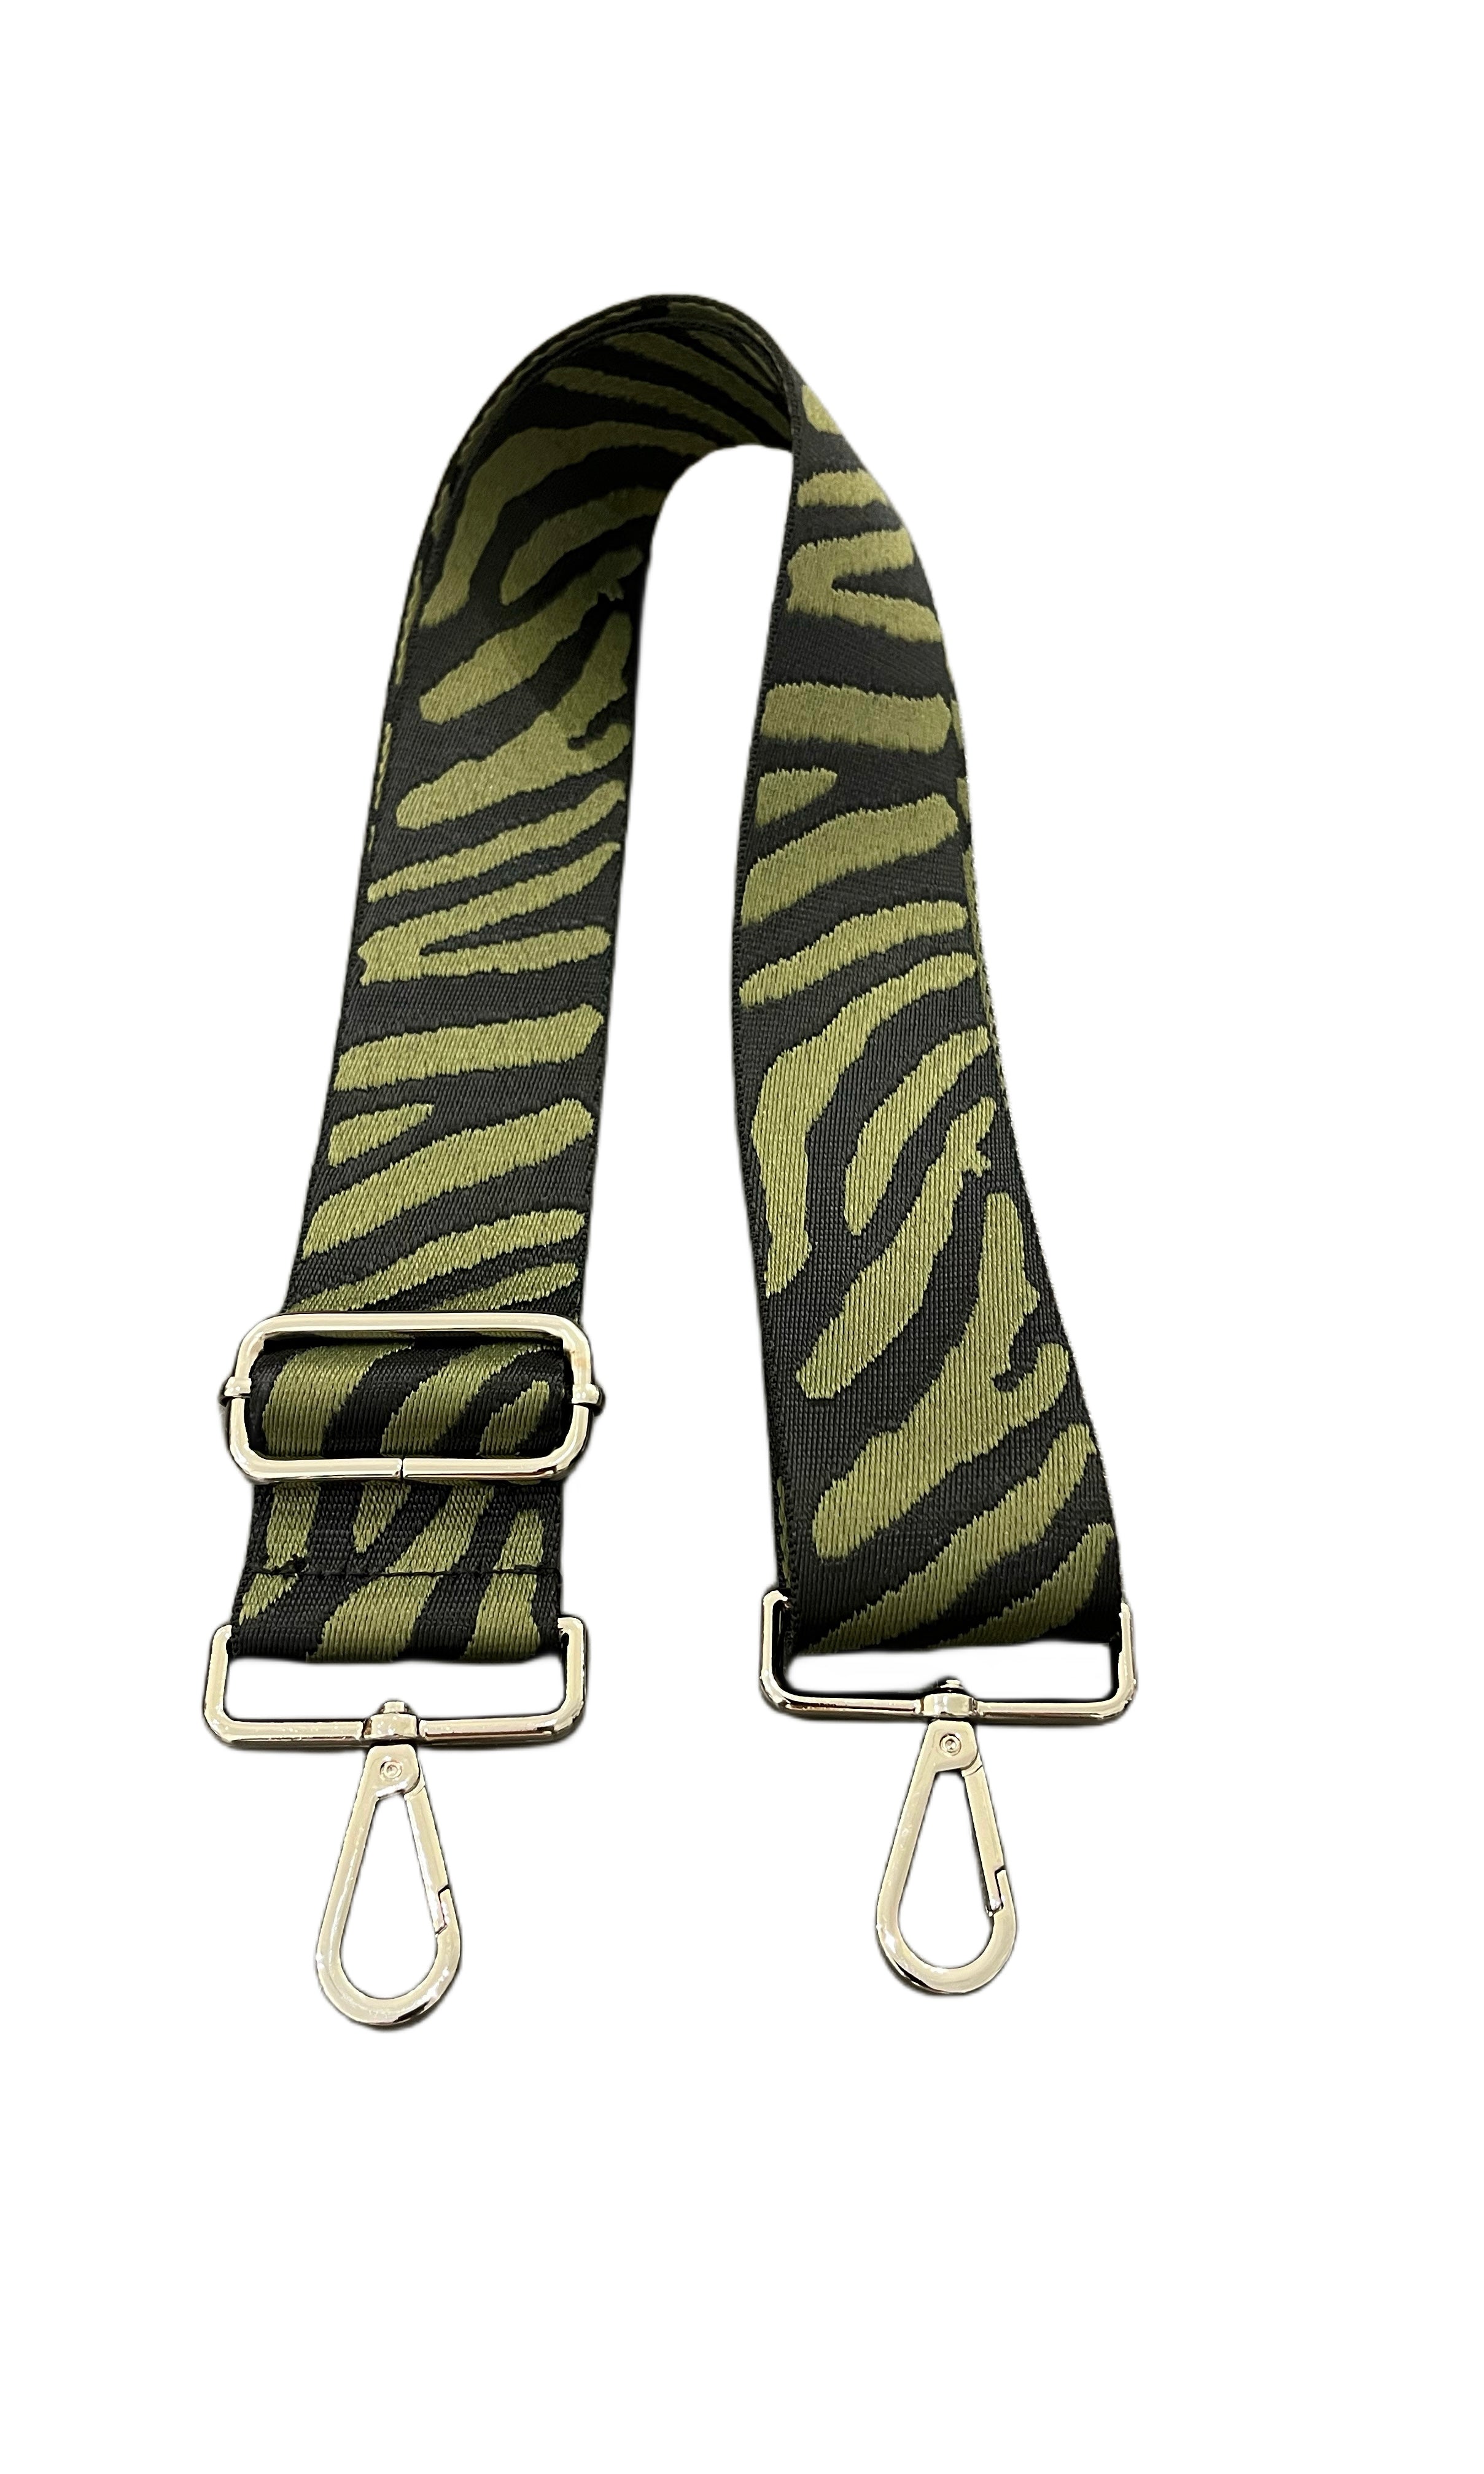 Bodinna Zebra Bag Straps-Made in Italy